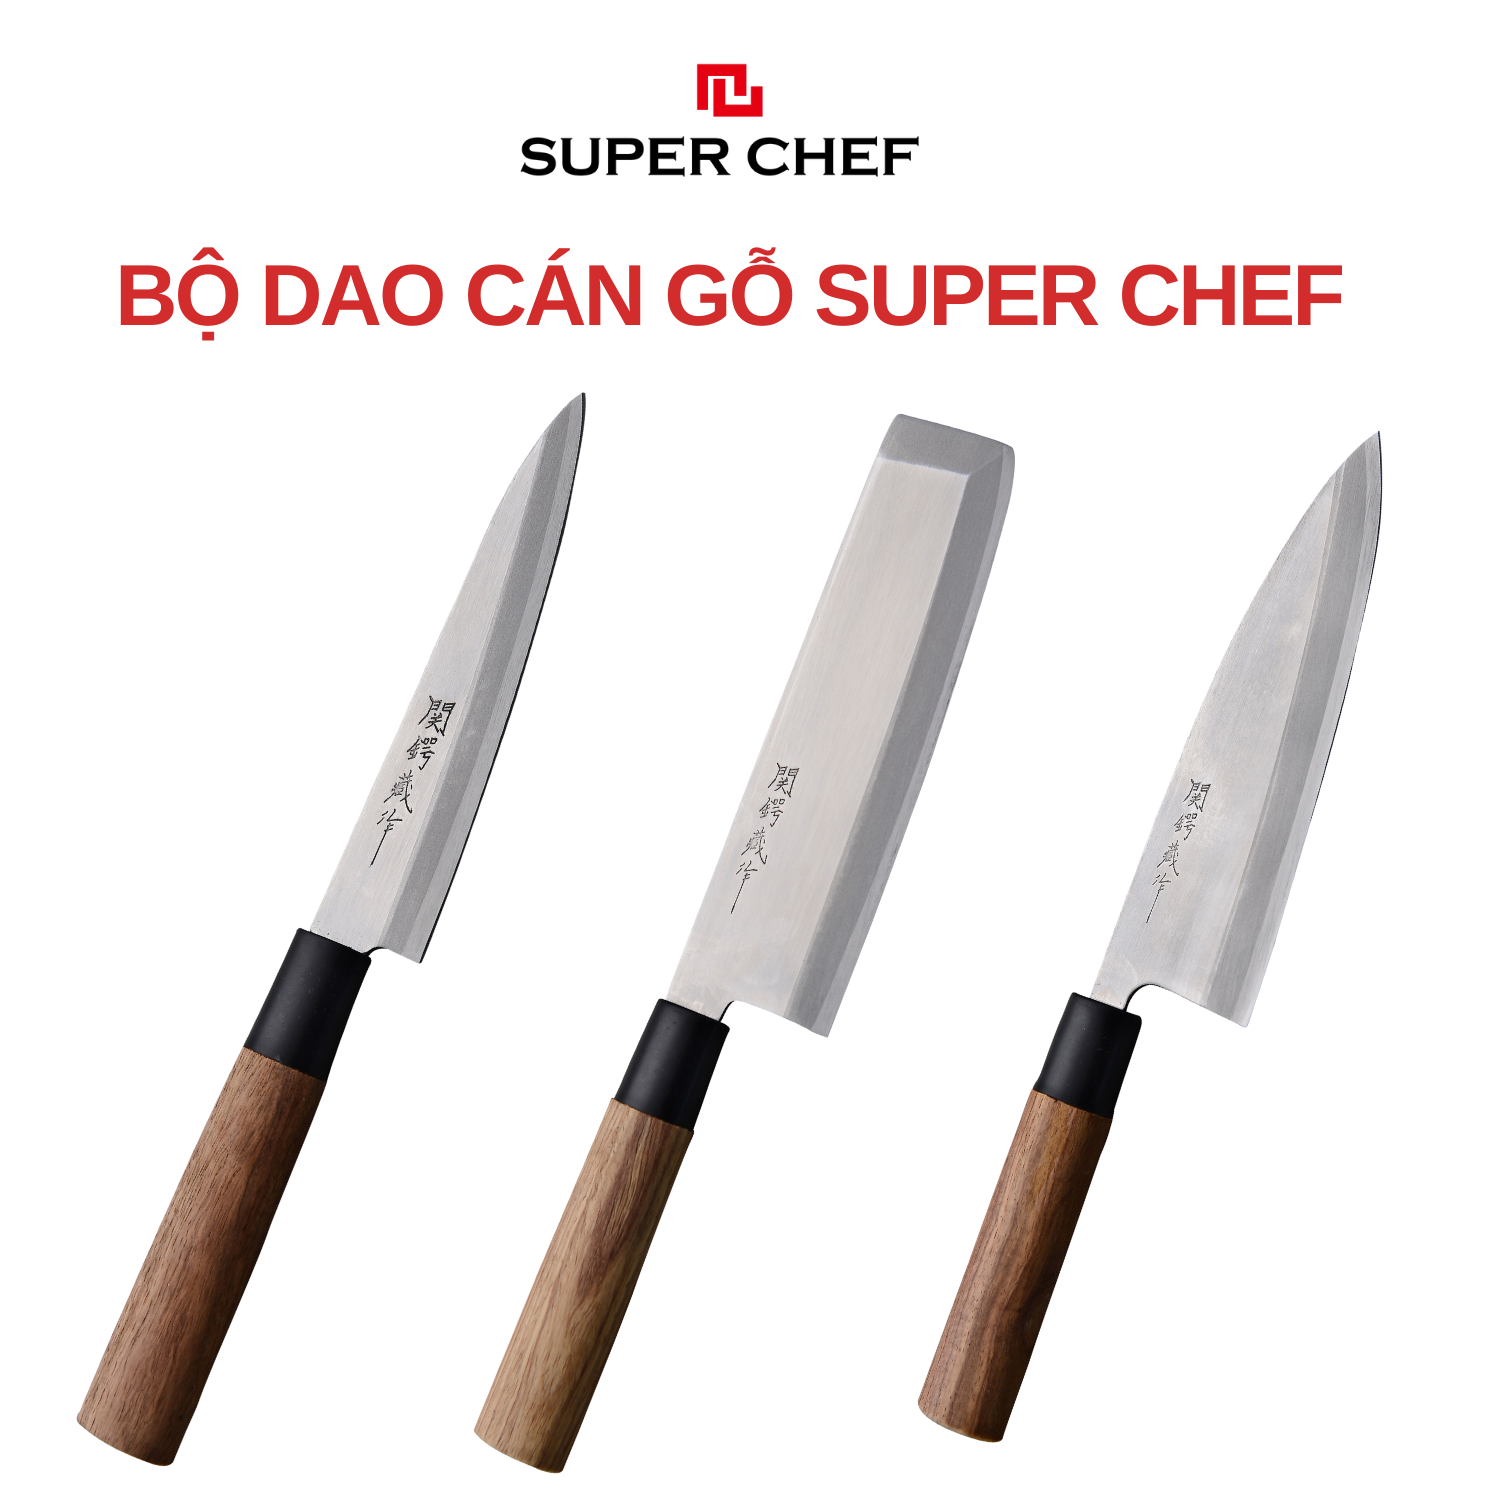 Bộ Dao Cán Gỗ Super Chef Sắc Bén, Siêu Bền Bỉ